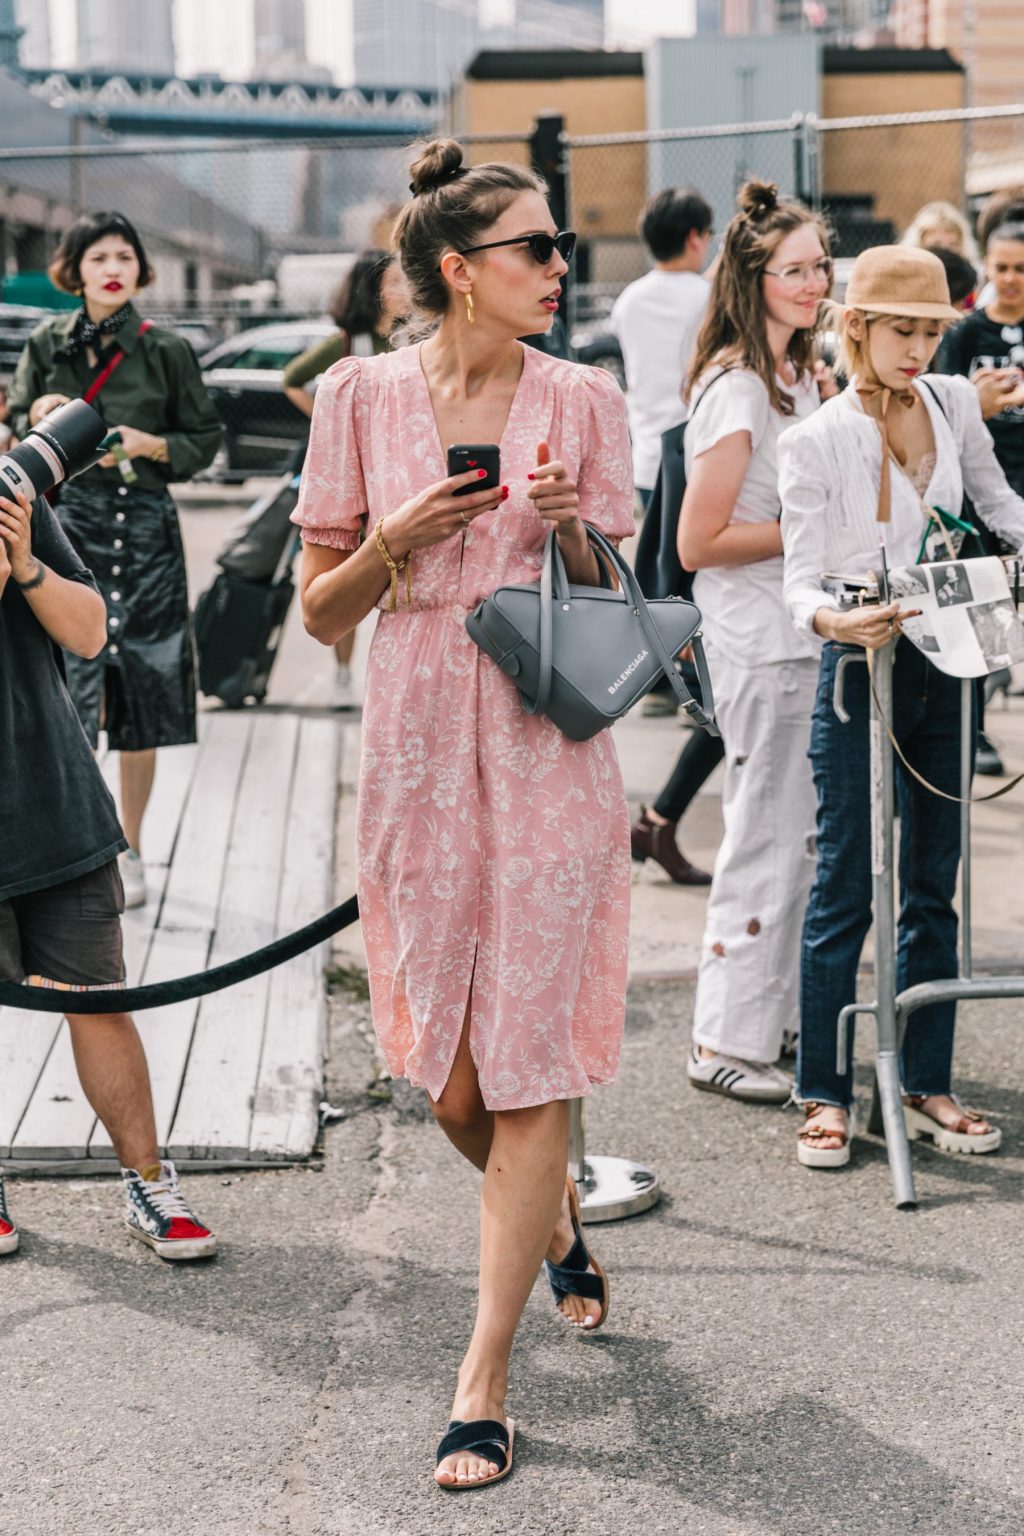 fashionista mặc đầm hồng millennial tại tuần lễ thời trang